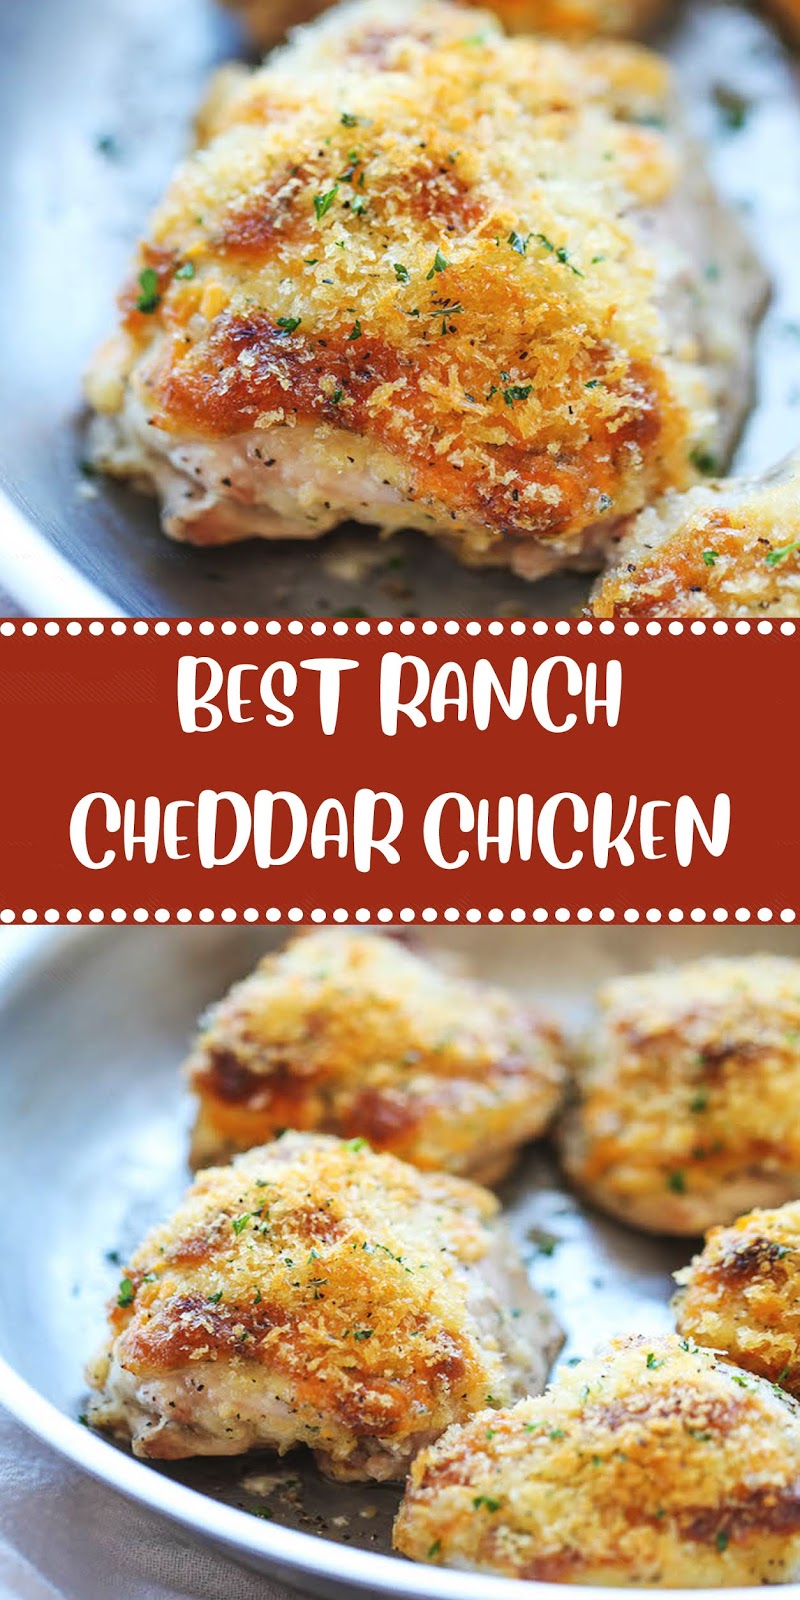 Best Ranch Cheddar Chicken